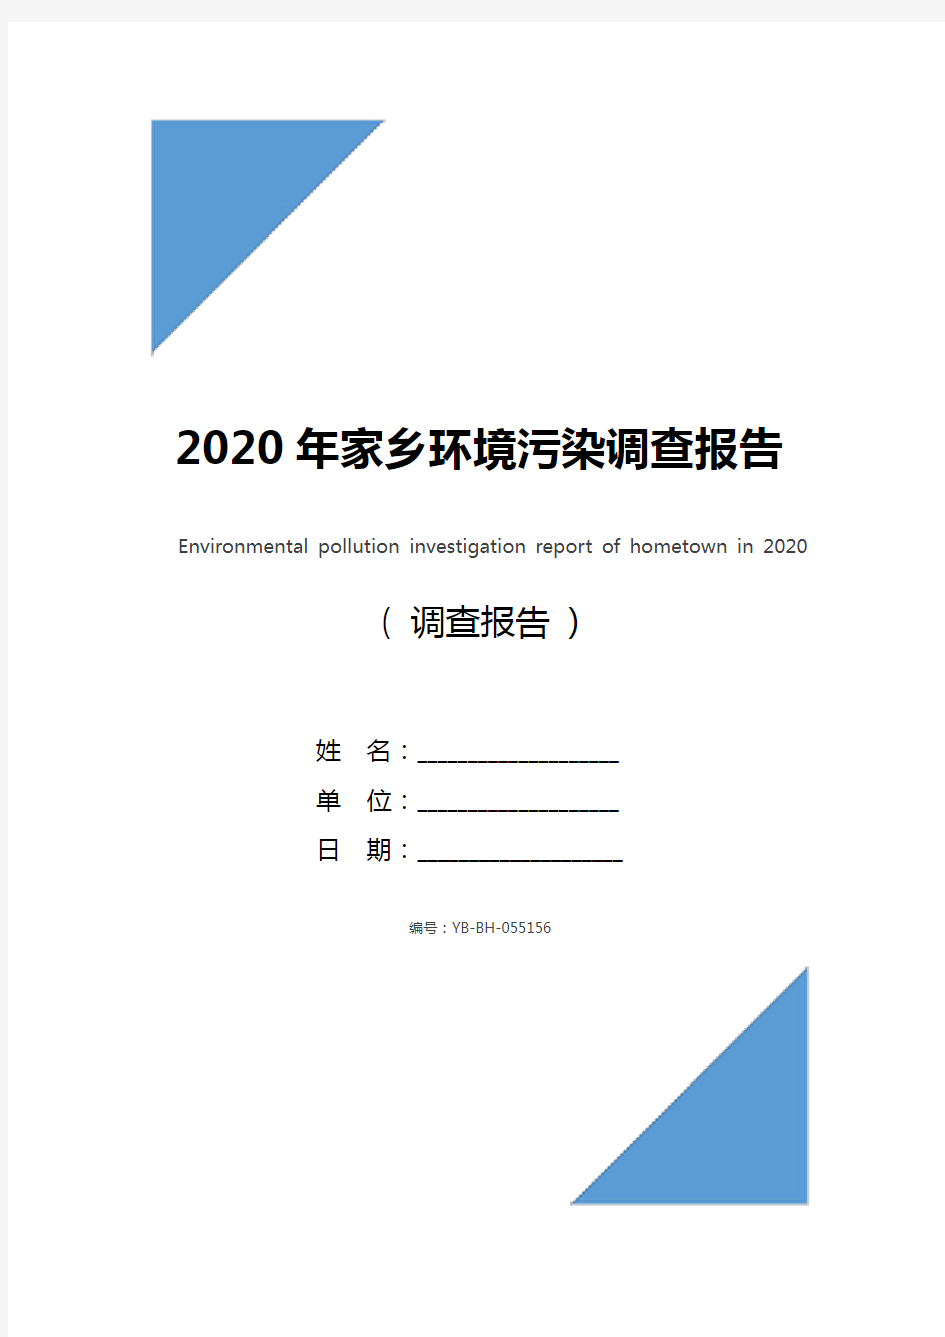 2020年家乡环境污染调查报告